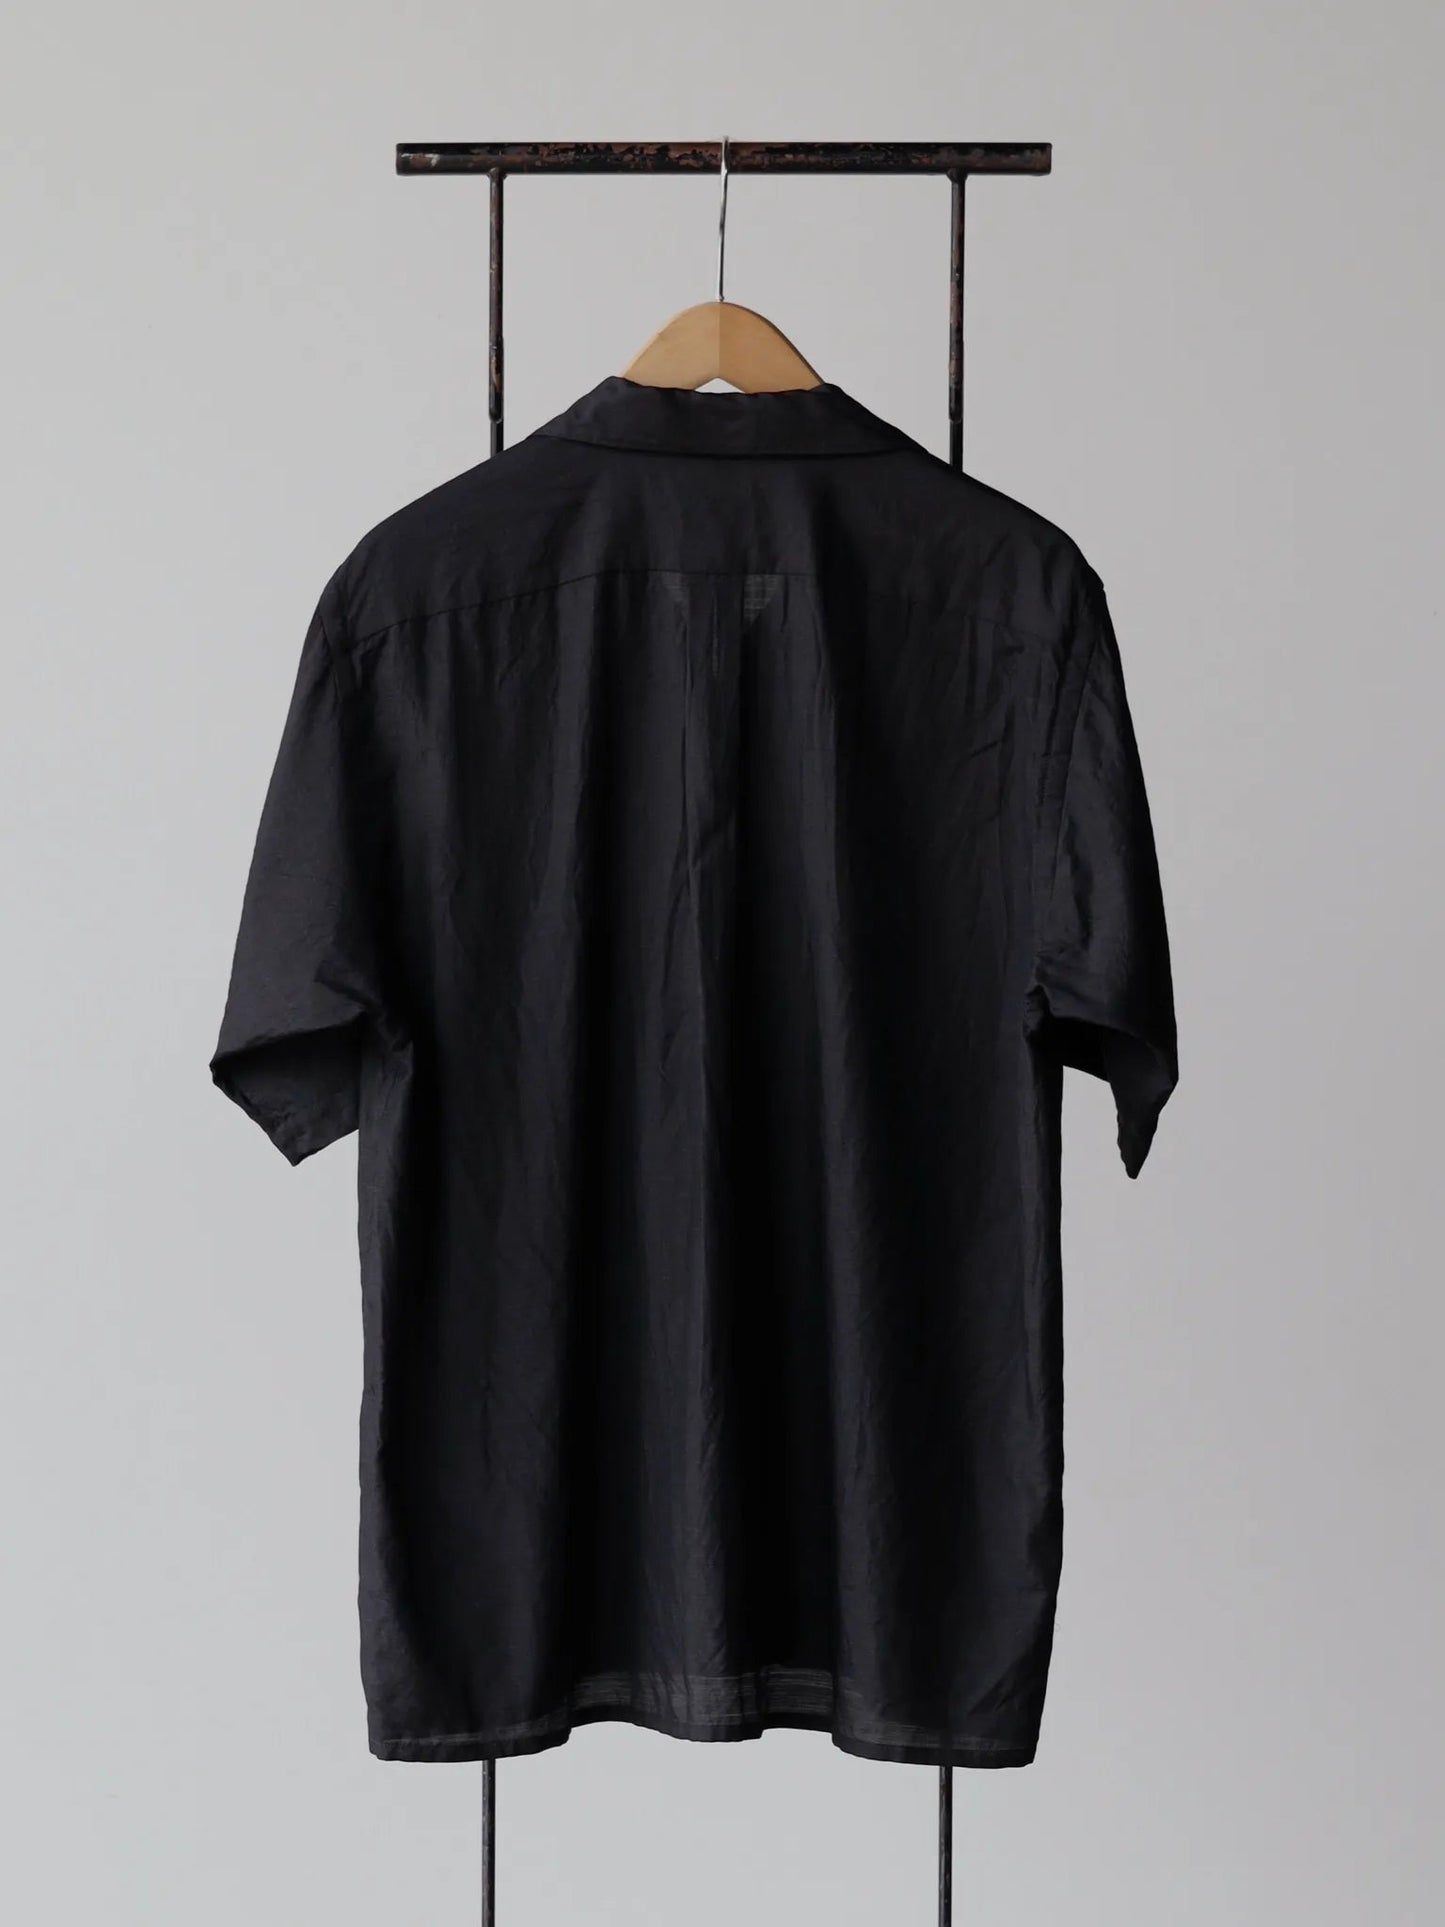 comoli-wool-silk-shortsleeve-opencollar-shirt-charcoal-2